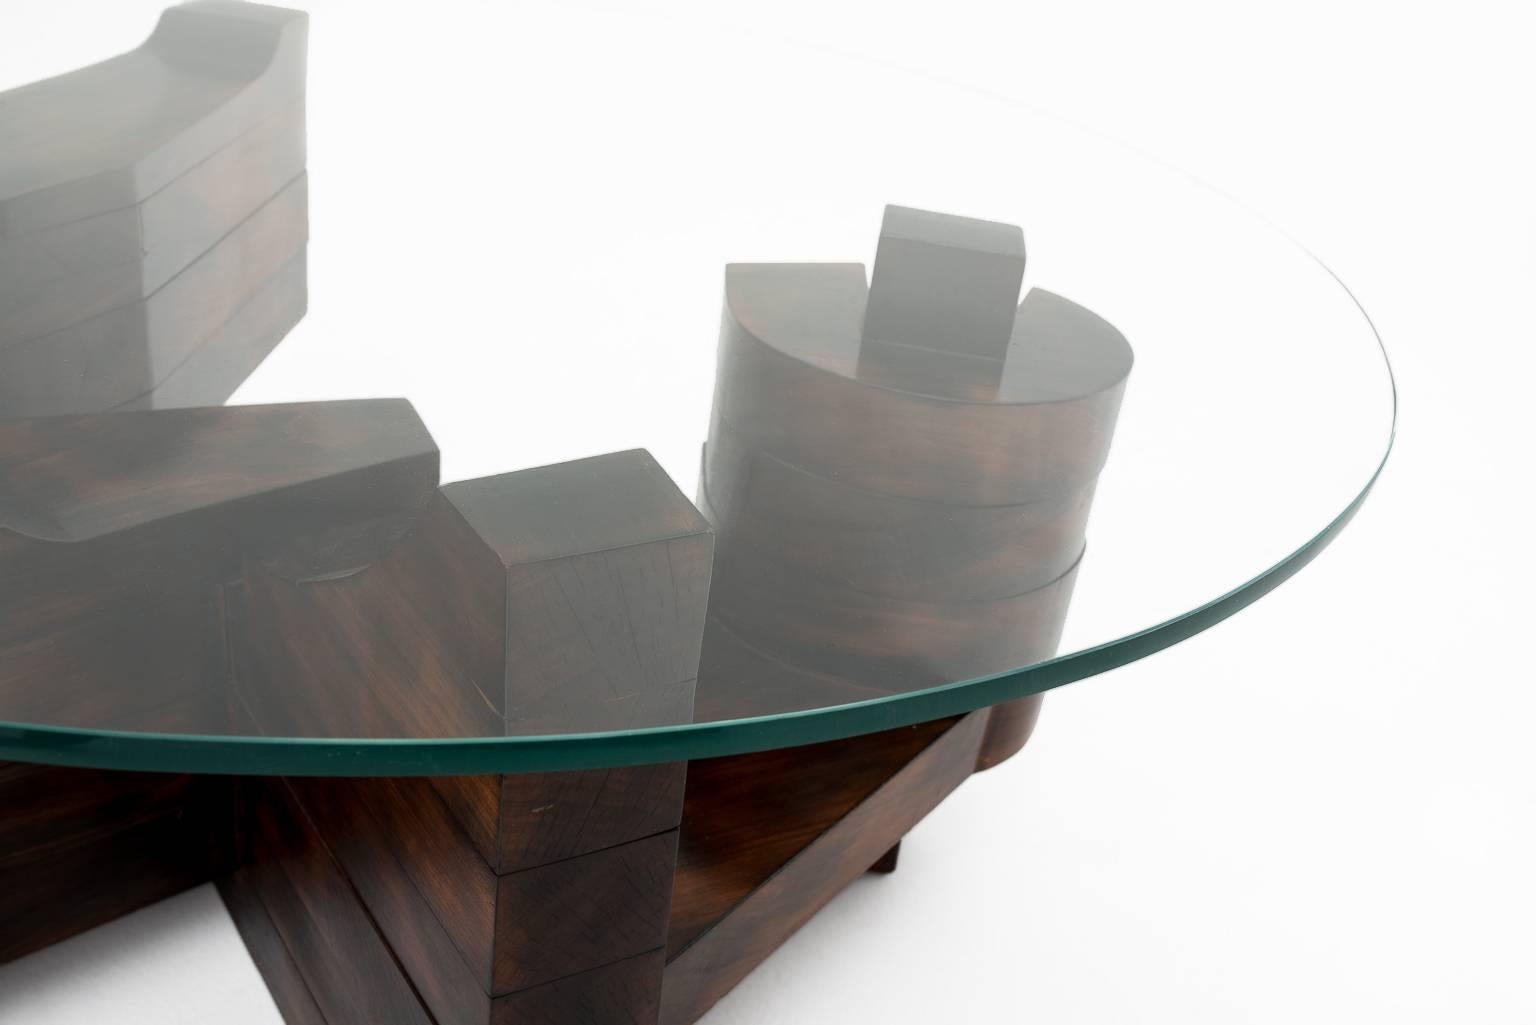 Italian Unique Sculptural Coffee Table by Nerone E. Patuzzi